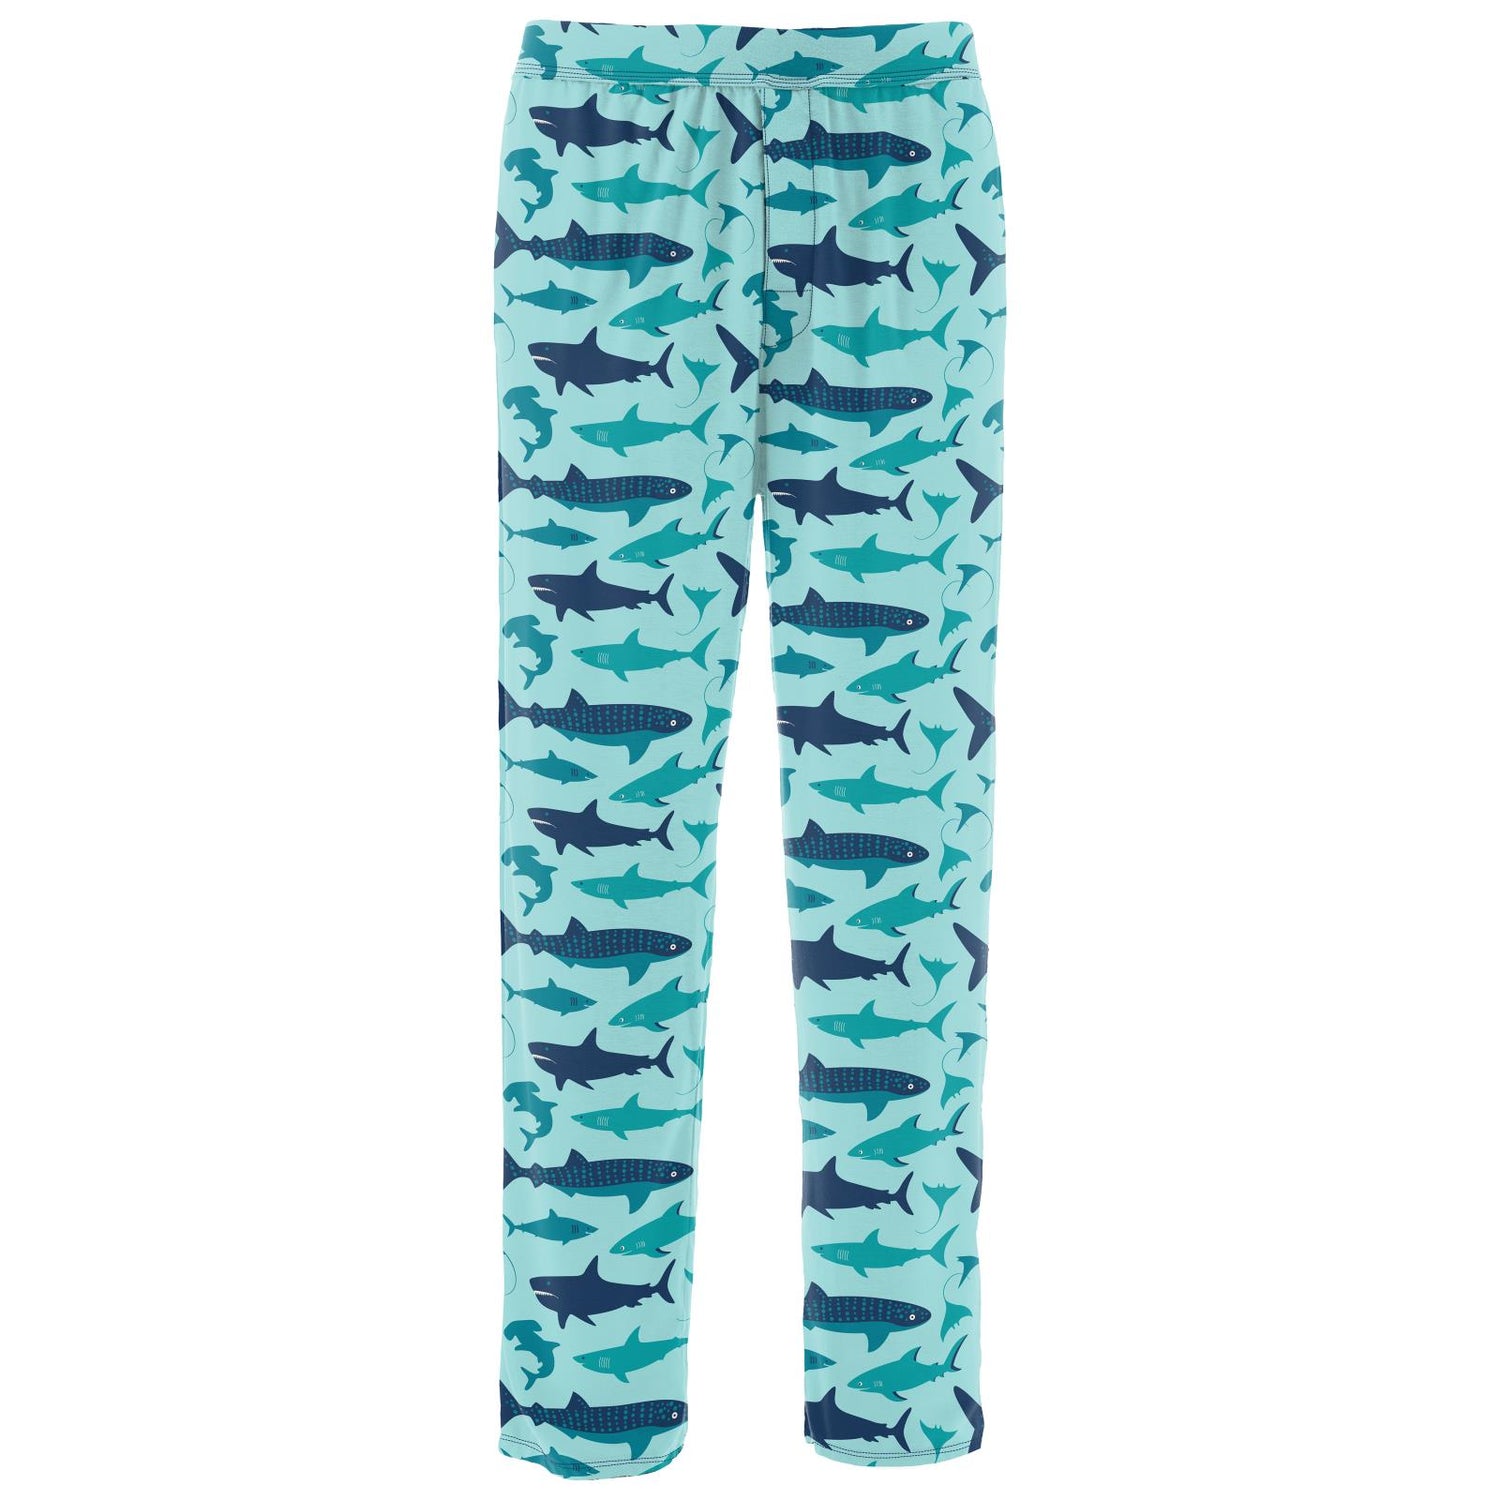 Men's Print Pajama Pants in Summer Sky Shark Week